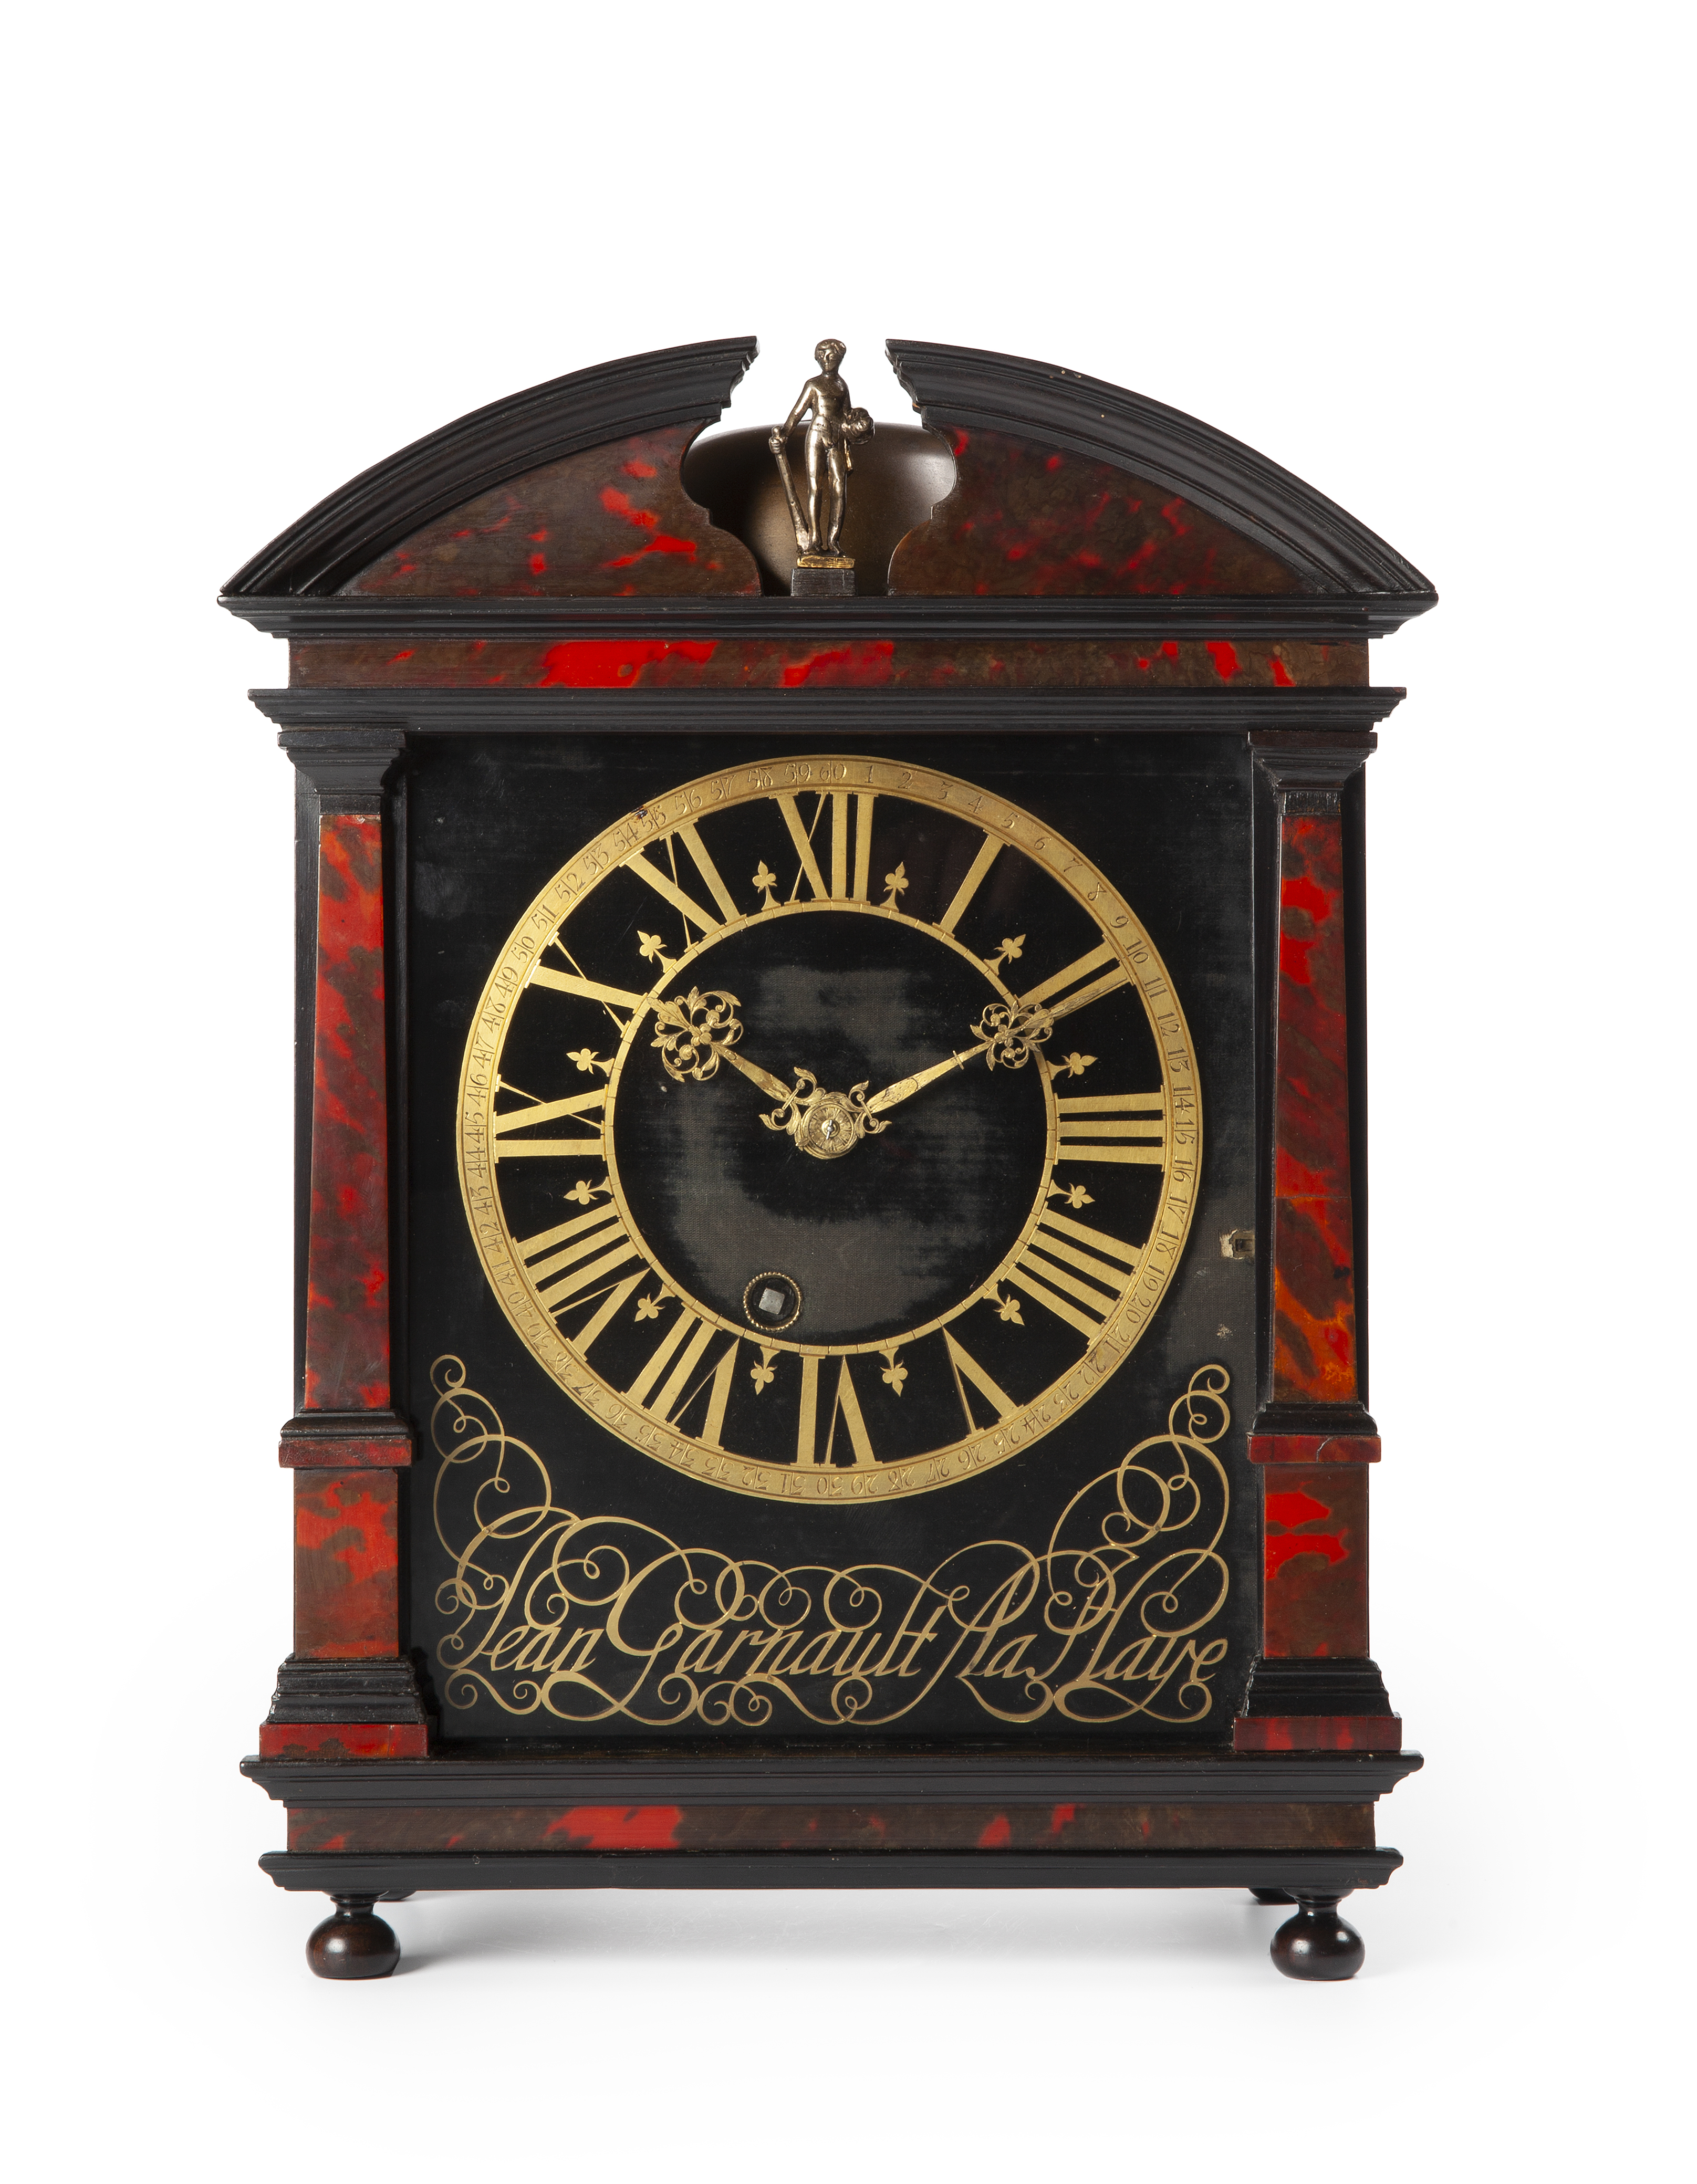 Belastingen teller Verbeteren Collectie antieke klokken collection antique clock clocks